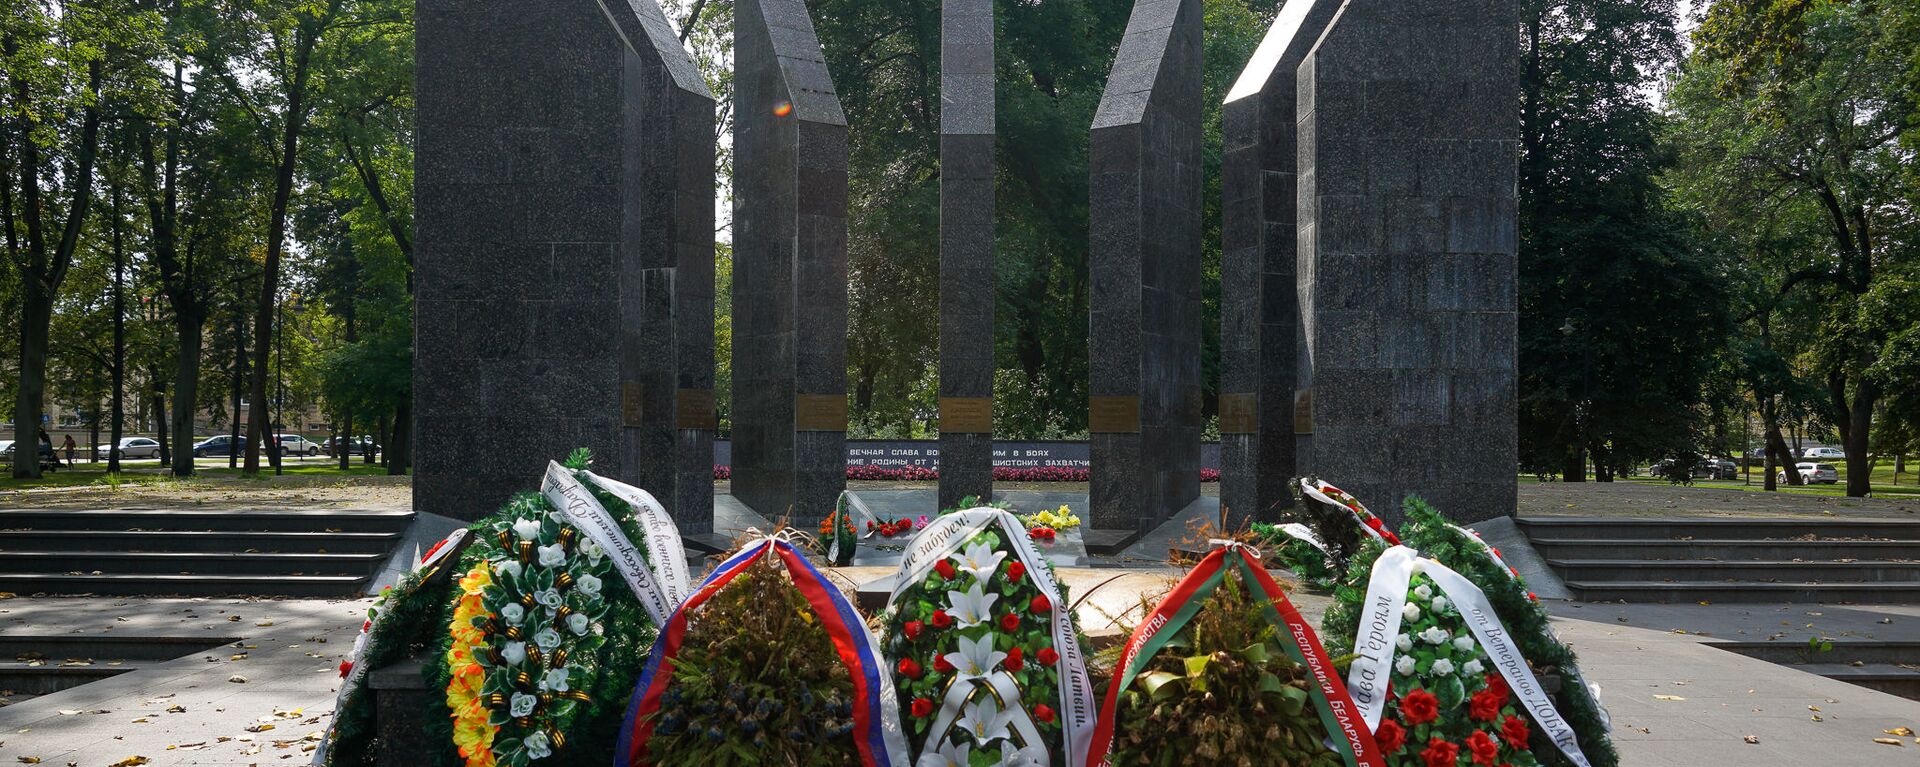 Мемориал воинам-освободителям Даугавпилса в парке Дубровина - Sputnik Латвия, 1920, 28.07.2021